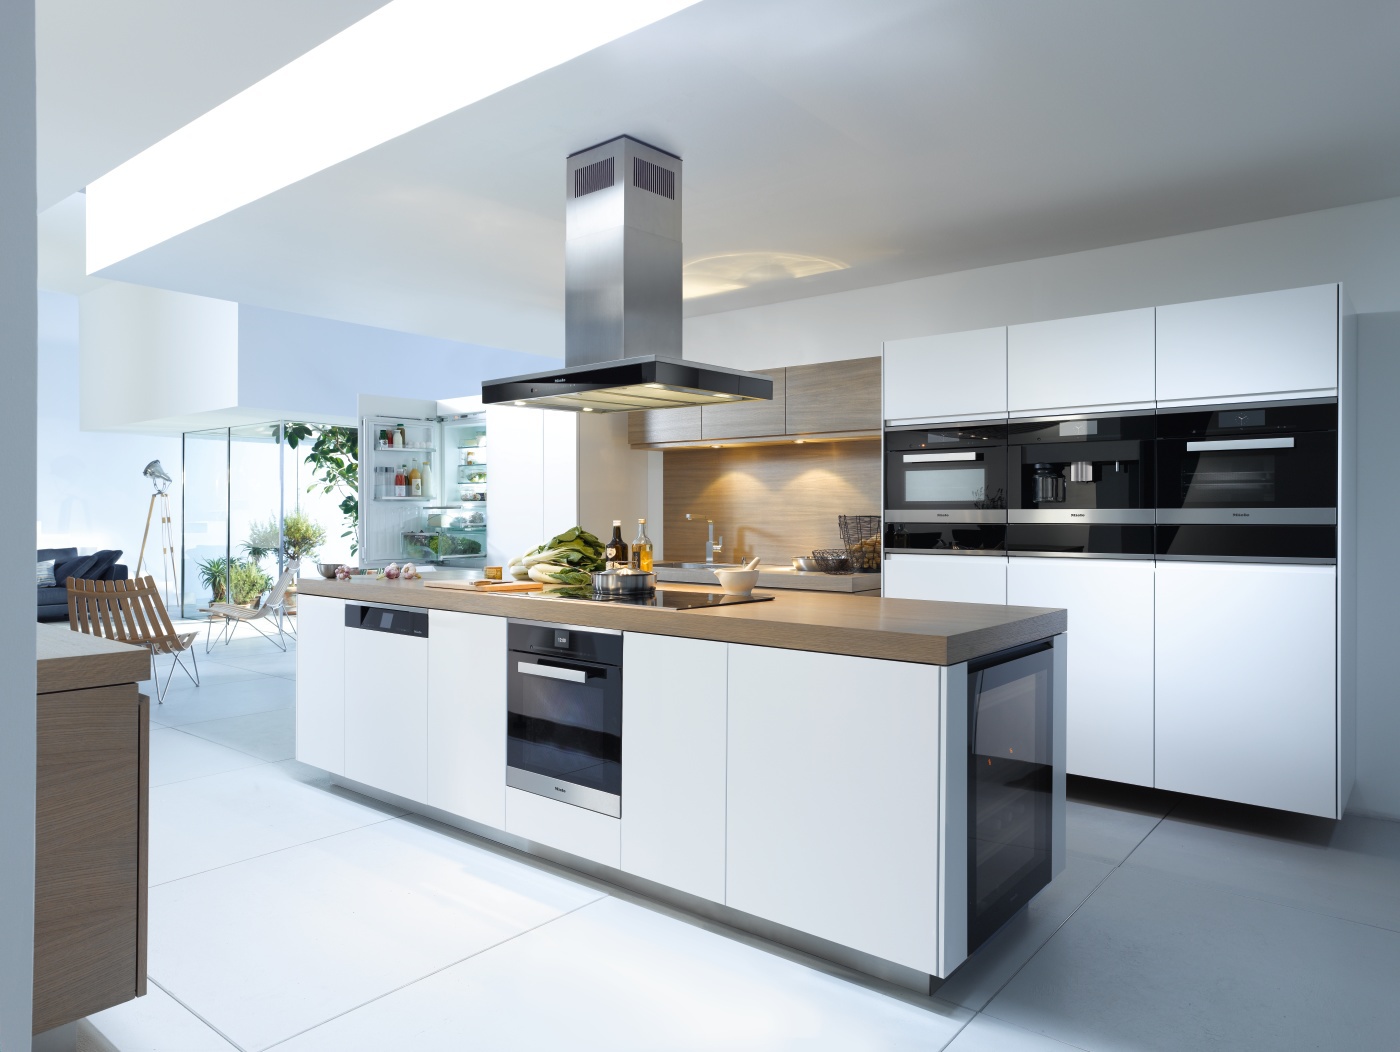 Qualitativ hochwertig, innovativ, einfach perfekt: Die Küchen von Nolte – auch bei Ihrem Möbelhaus SCHOTT im Sortiment